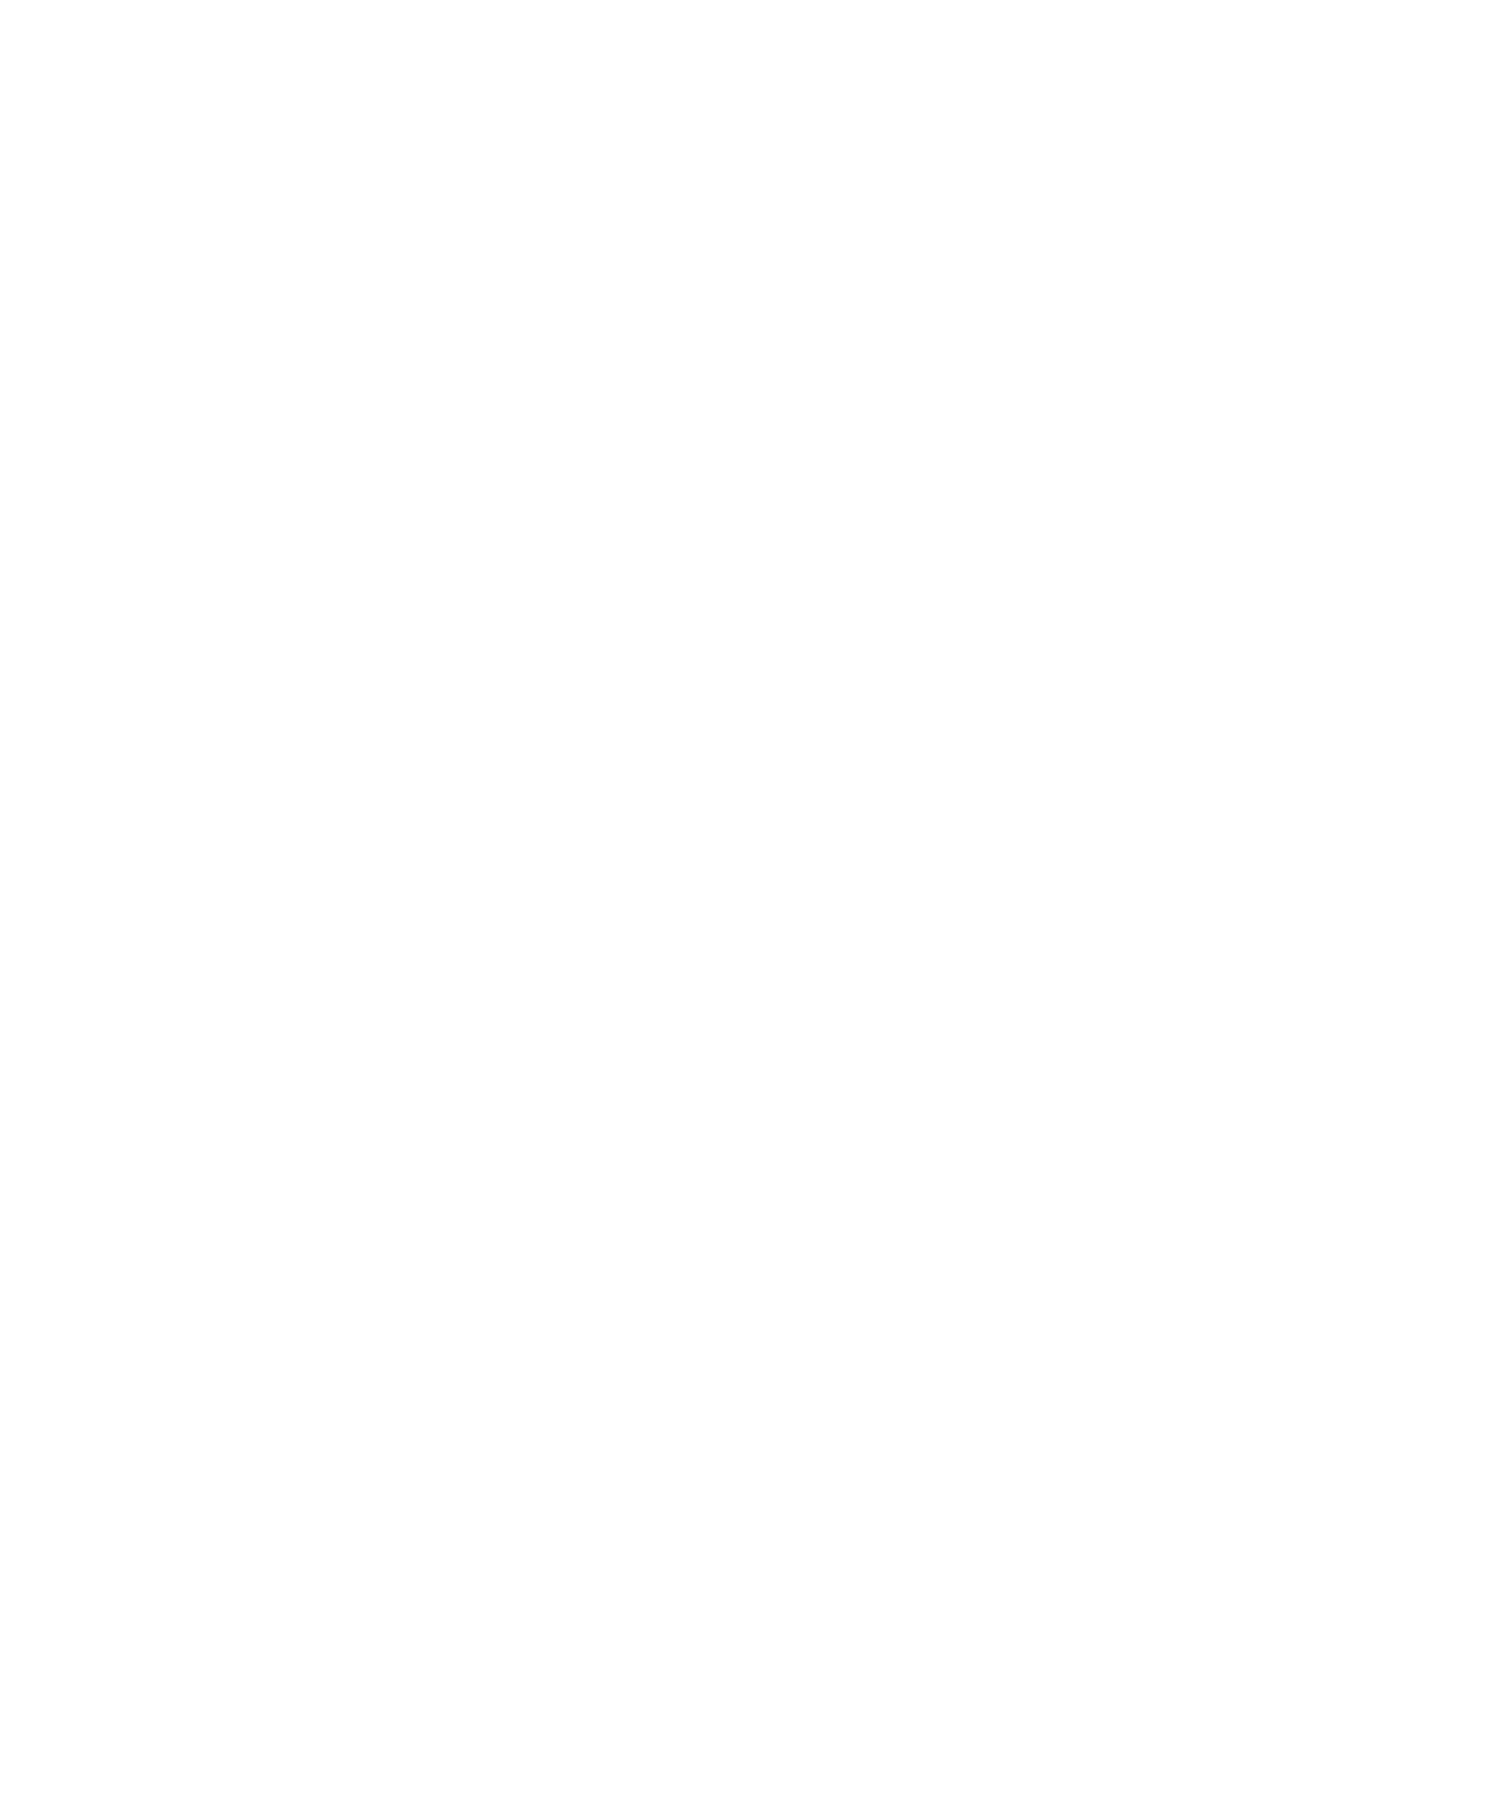 GloriousTX - Custom Branded Premium Granola